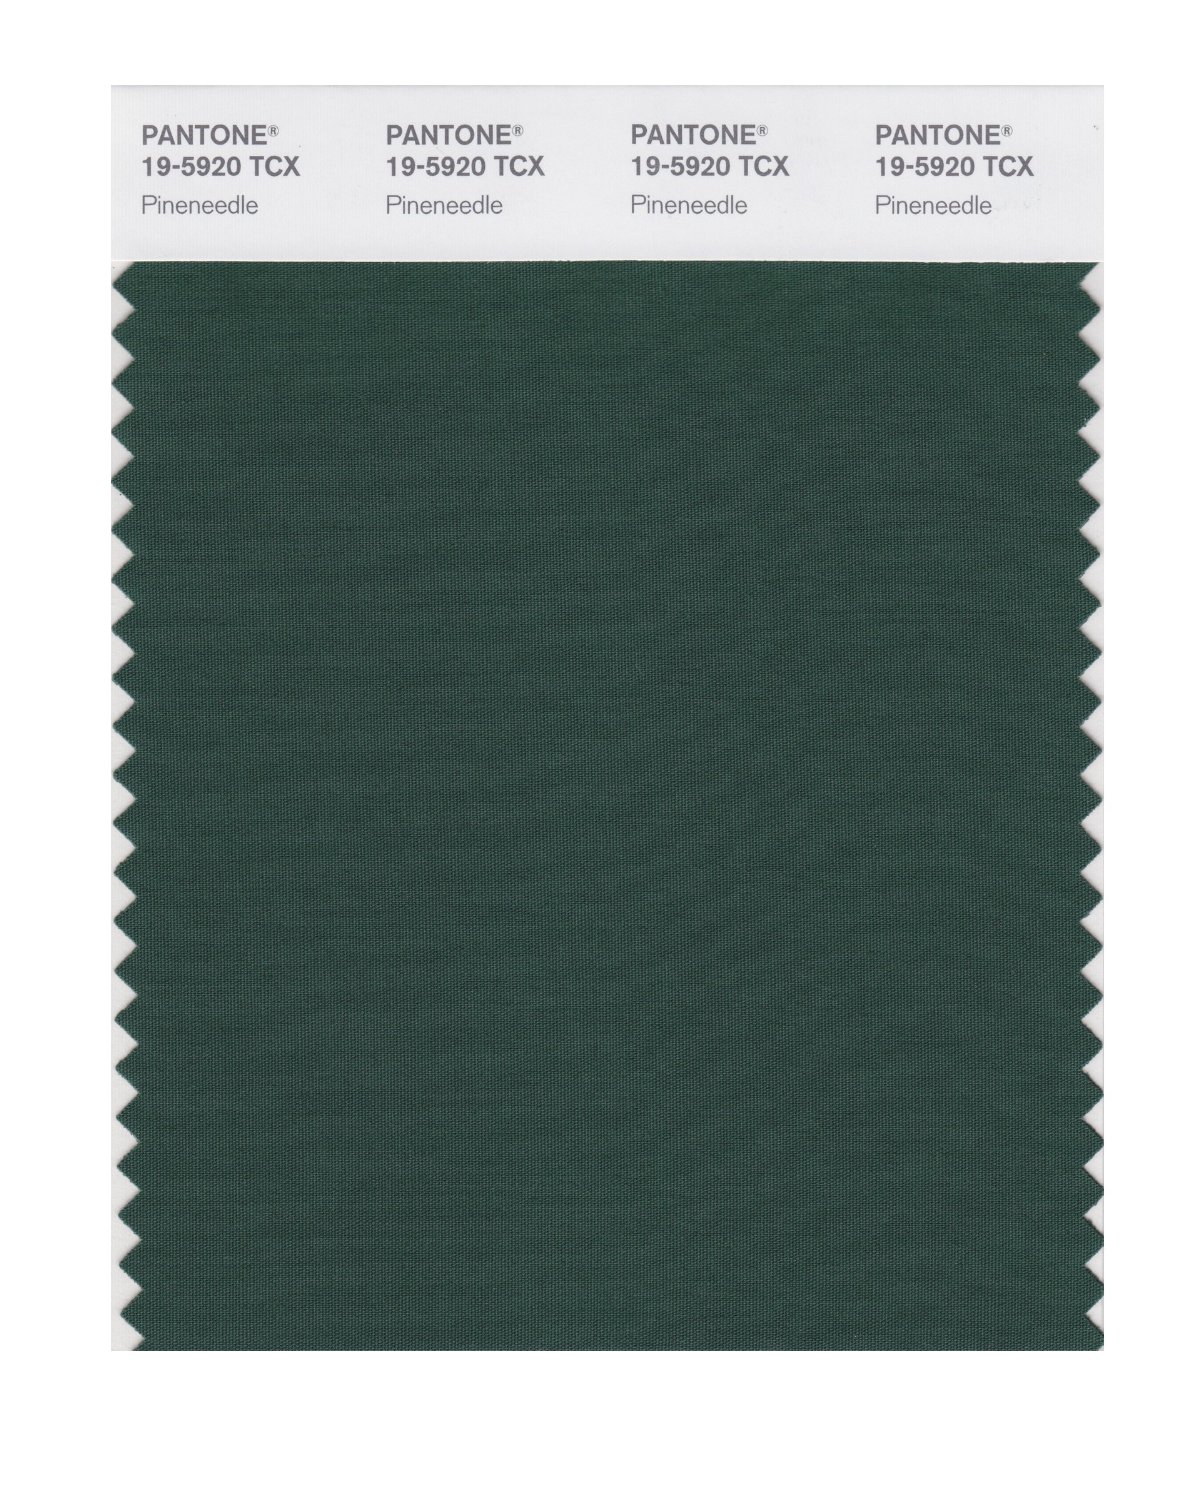 Pantone Cotton Swatch 19-5920 Pineneedle